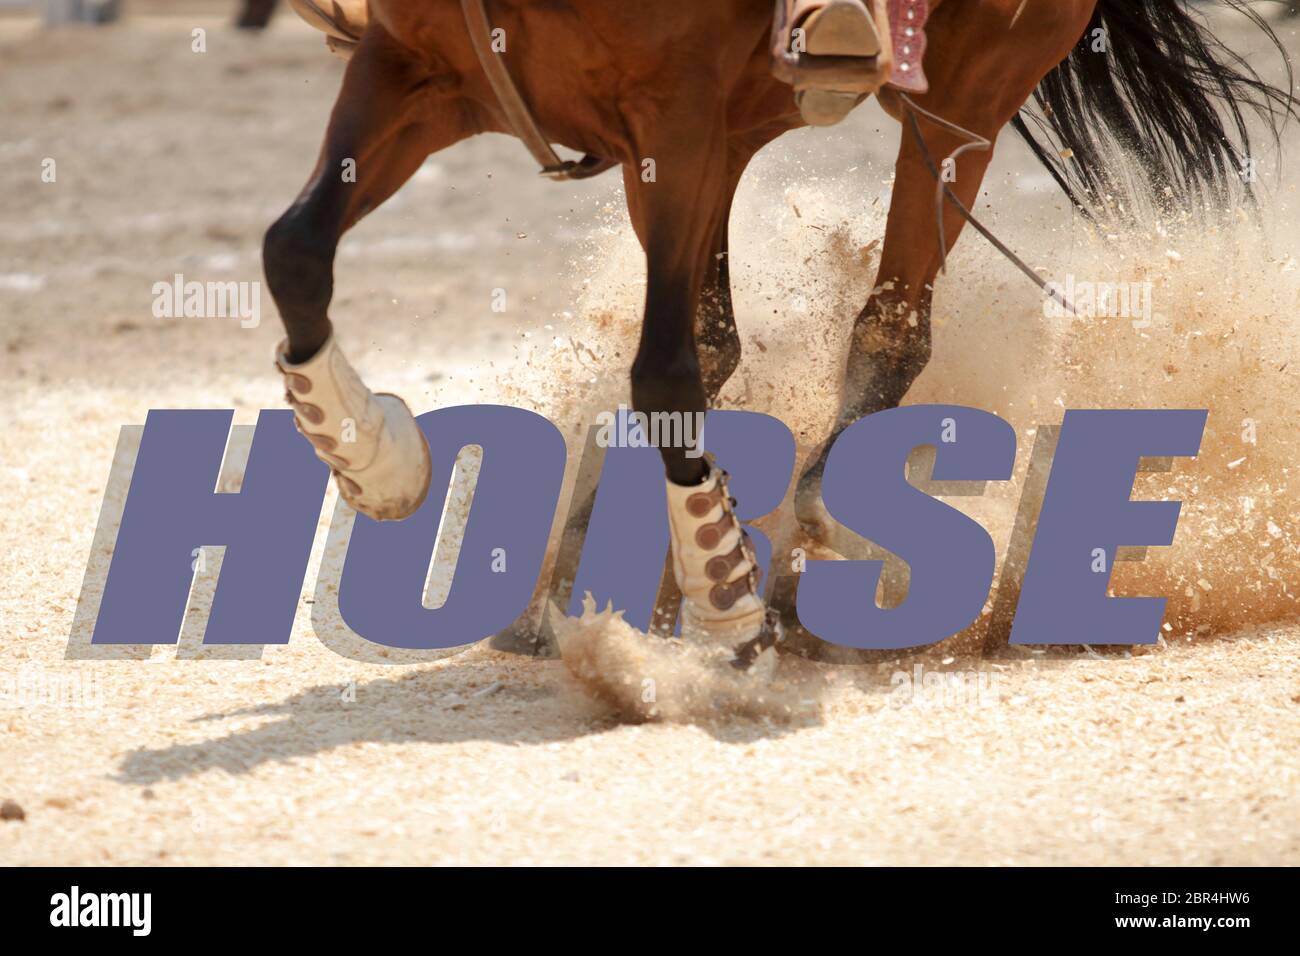 La parola CAVALLO scritto su una foto di cavalli galoppo come sfondo Foto Stock